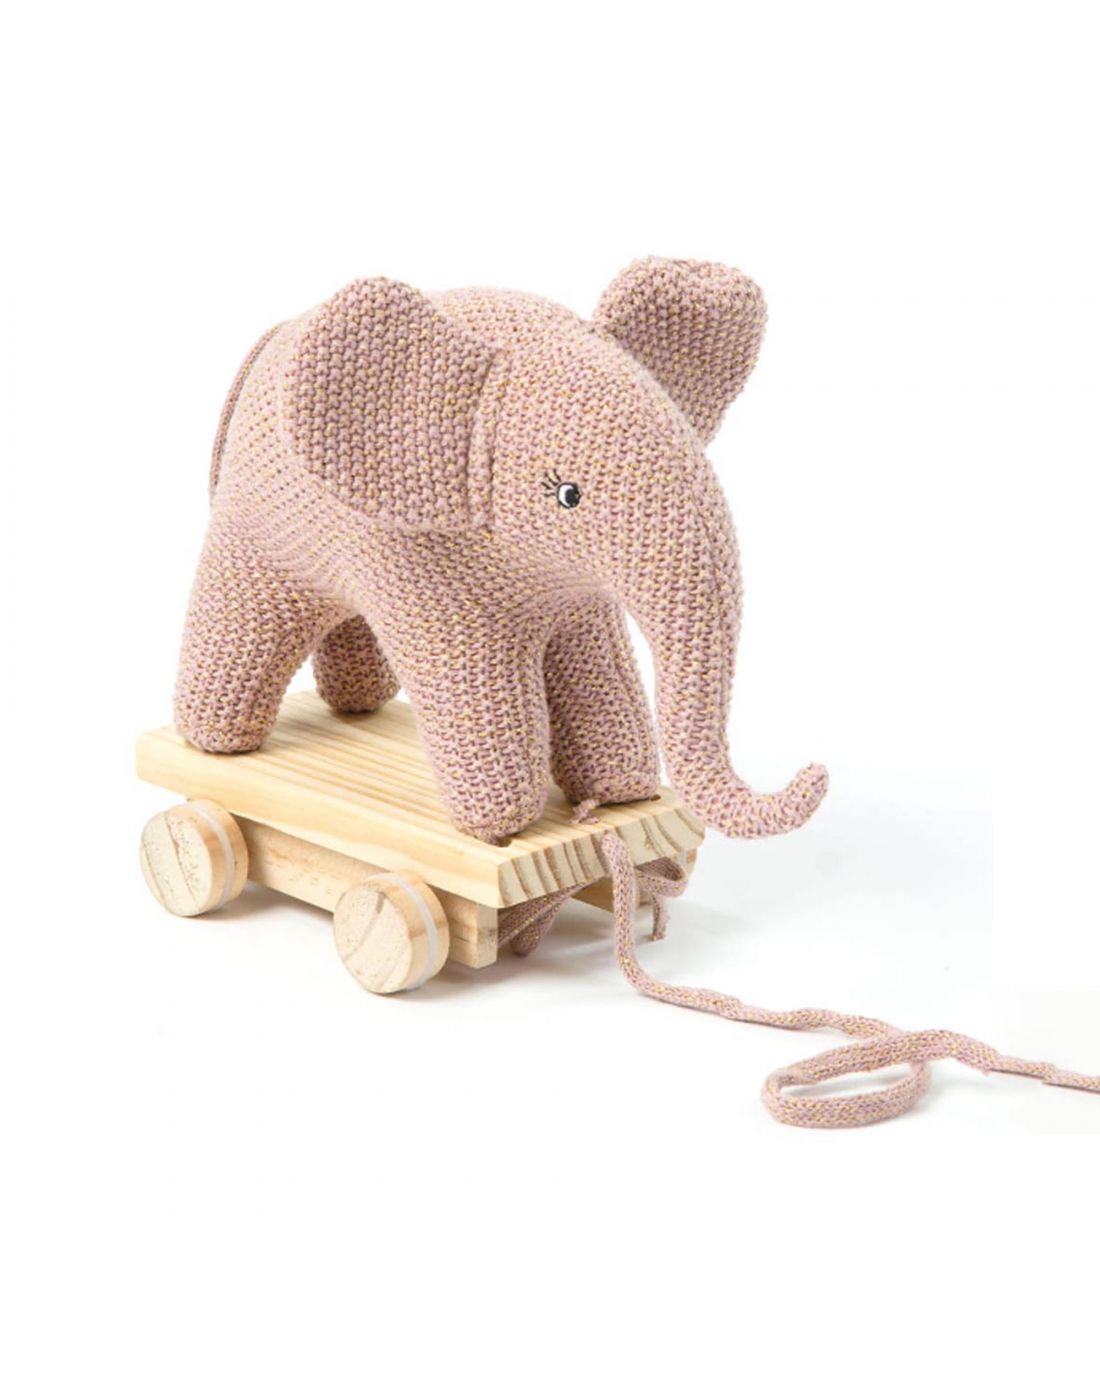 Παιδικό Συρόμενο Παιχνίδι Πλεκτός Ελέφαντας Rose-Gold Small Stuff, Small  Staff, .371497 | LapinKids.com | LAPIN KIDS